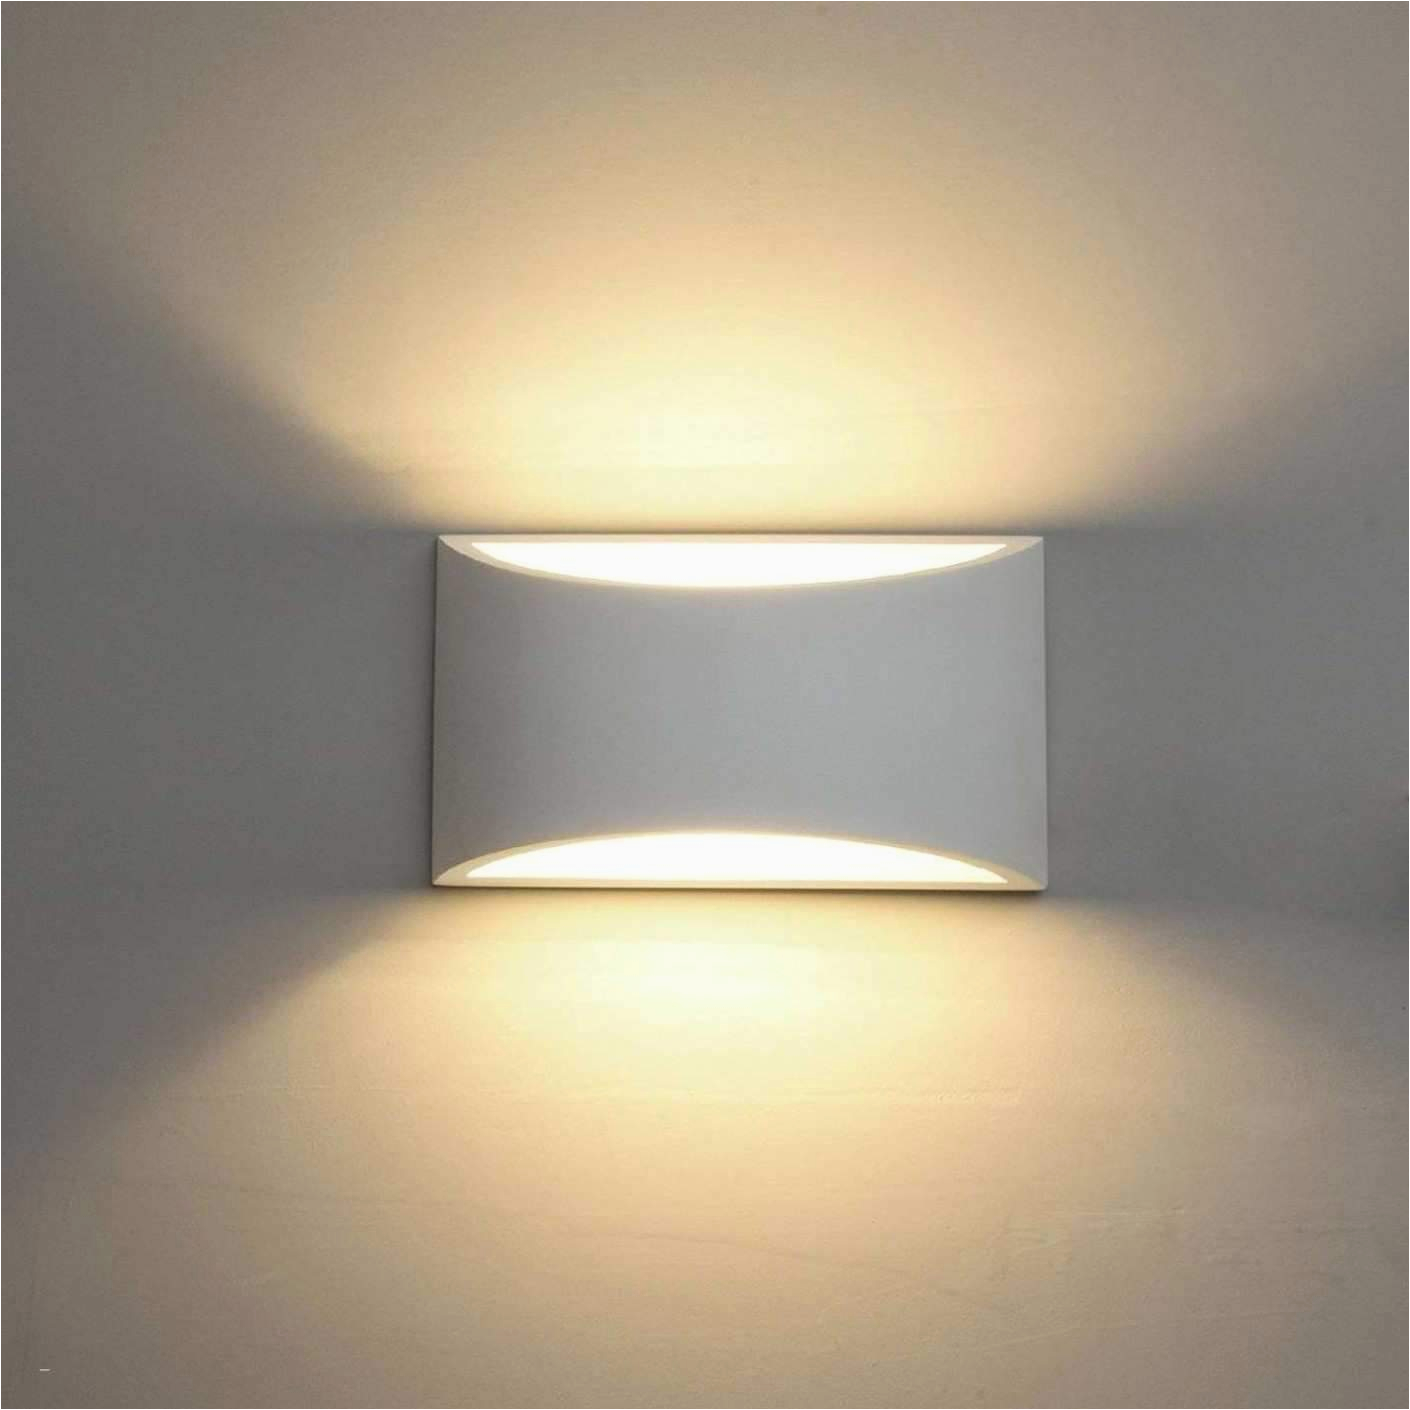 led lampen wohnzimmer das beste von led lampen wohnzimmer genial deckenlampe schlafzimmer 0d of led lampen wohnzimmer